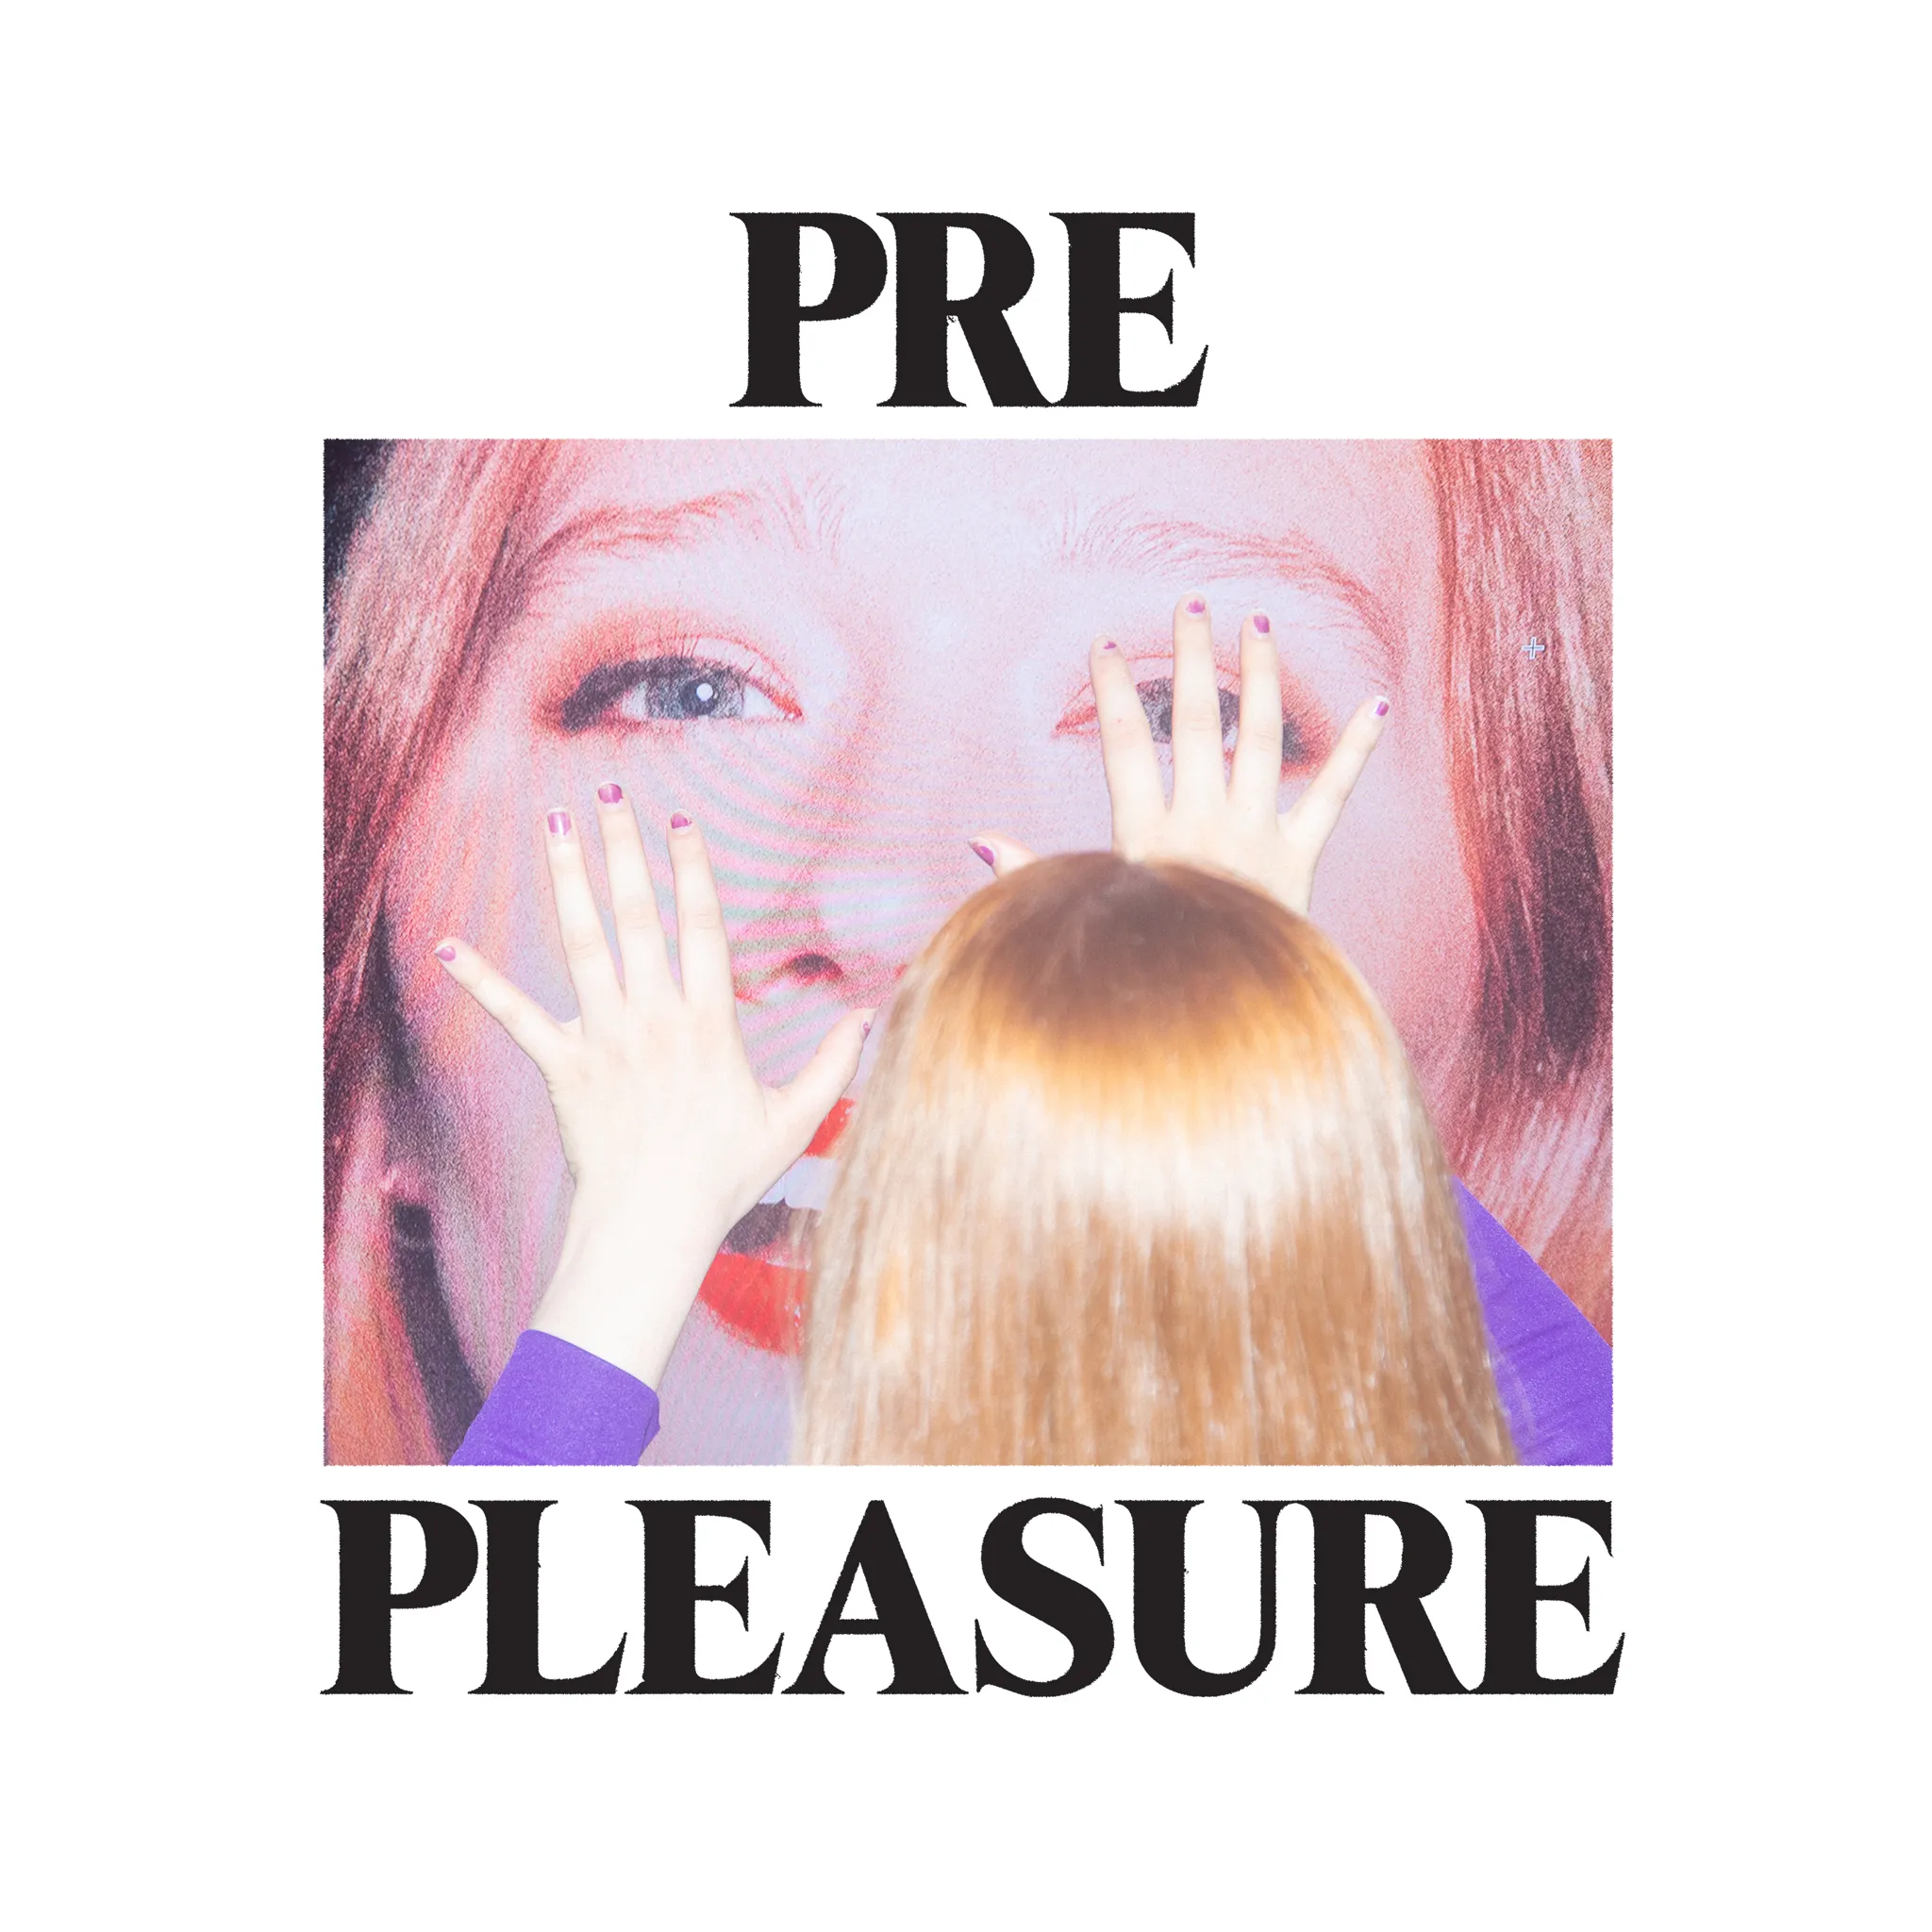 Buy Pre Pleasure via Rough Trade